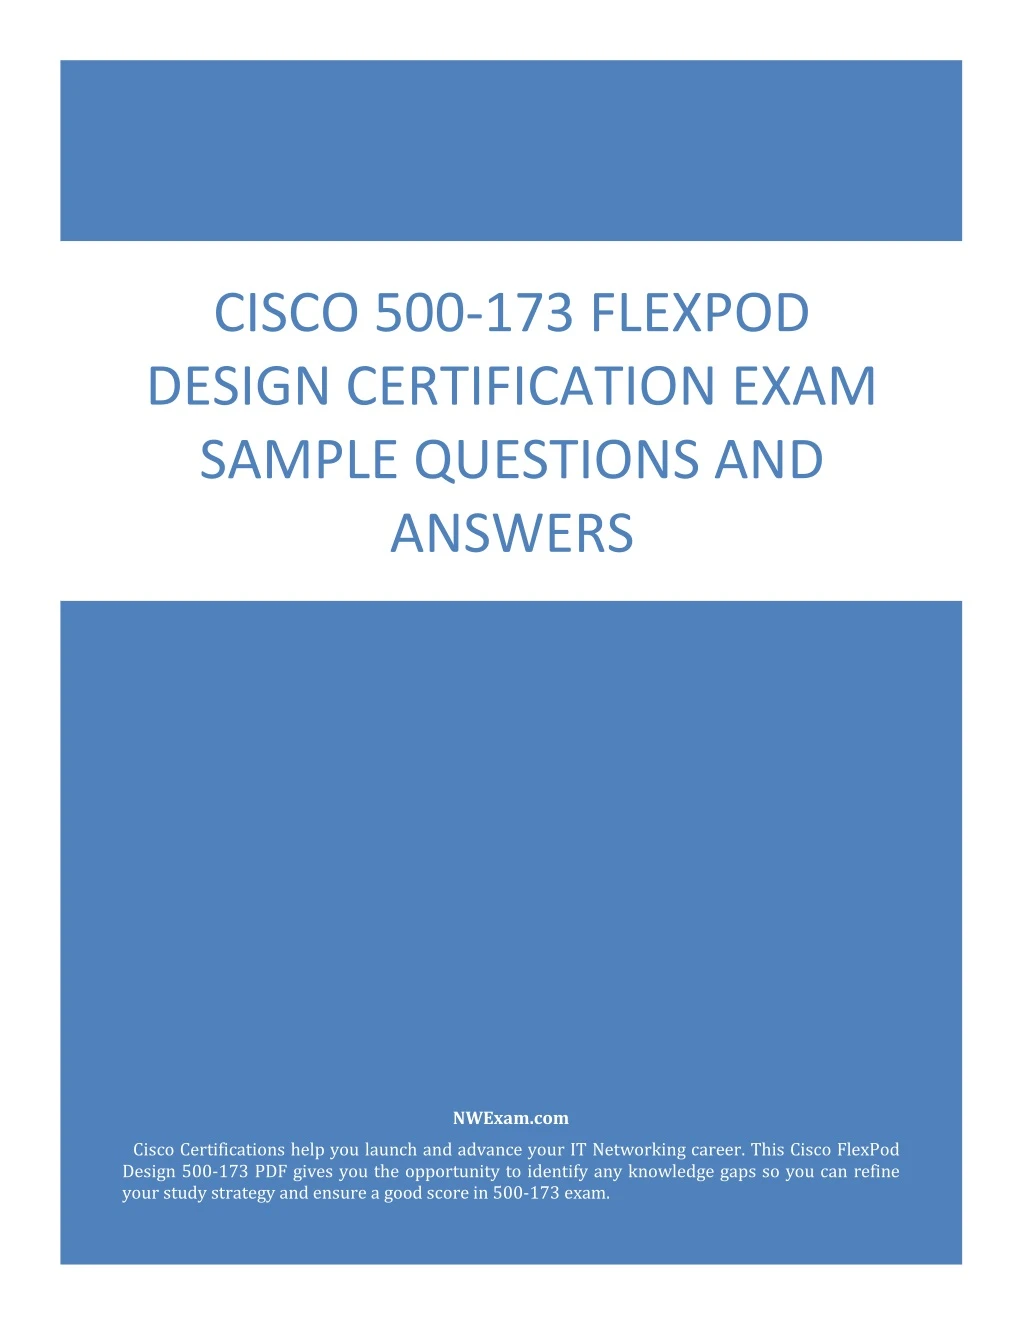 cisco 500 173 flexpod design certification exam